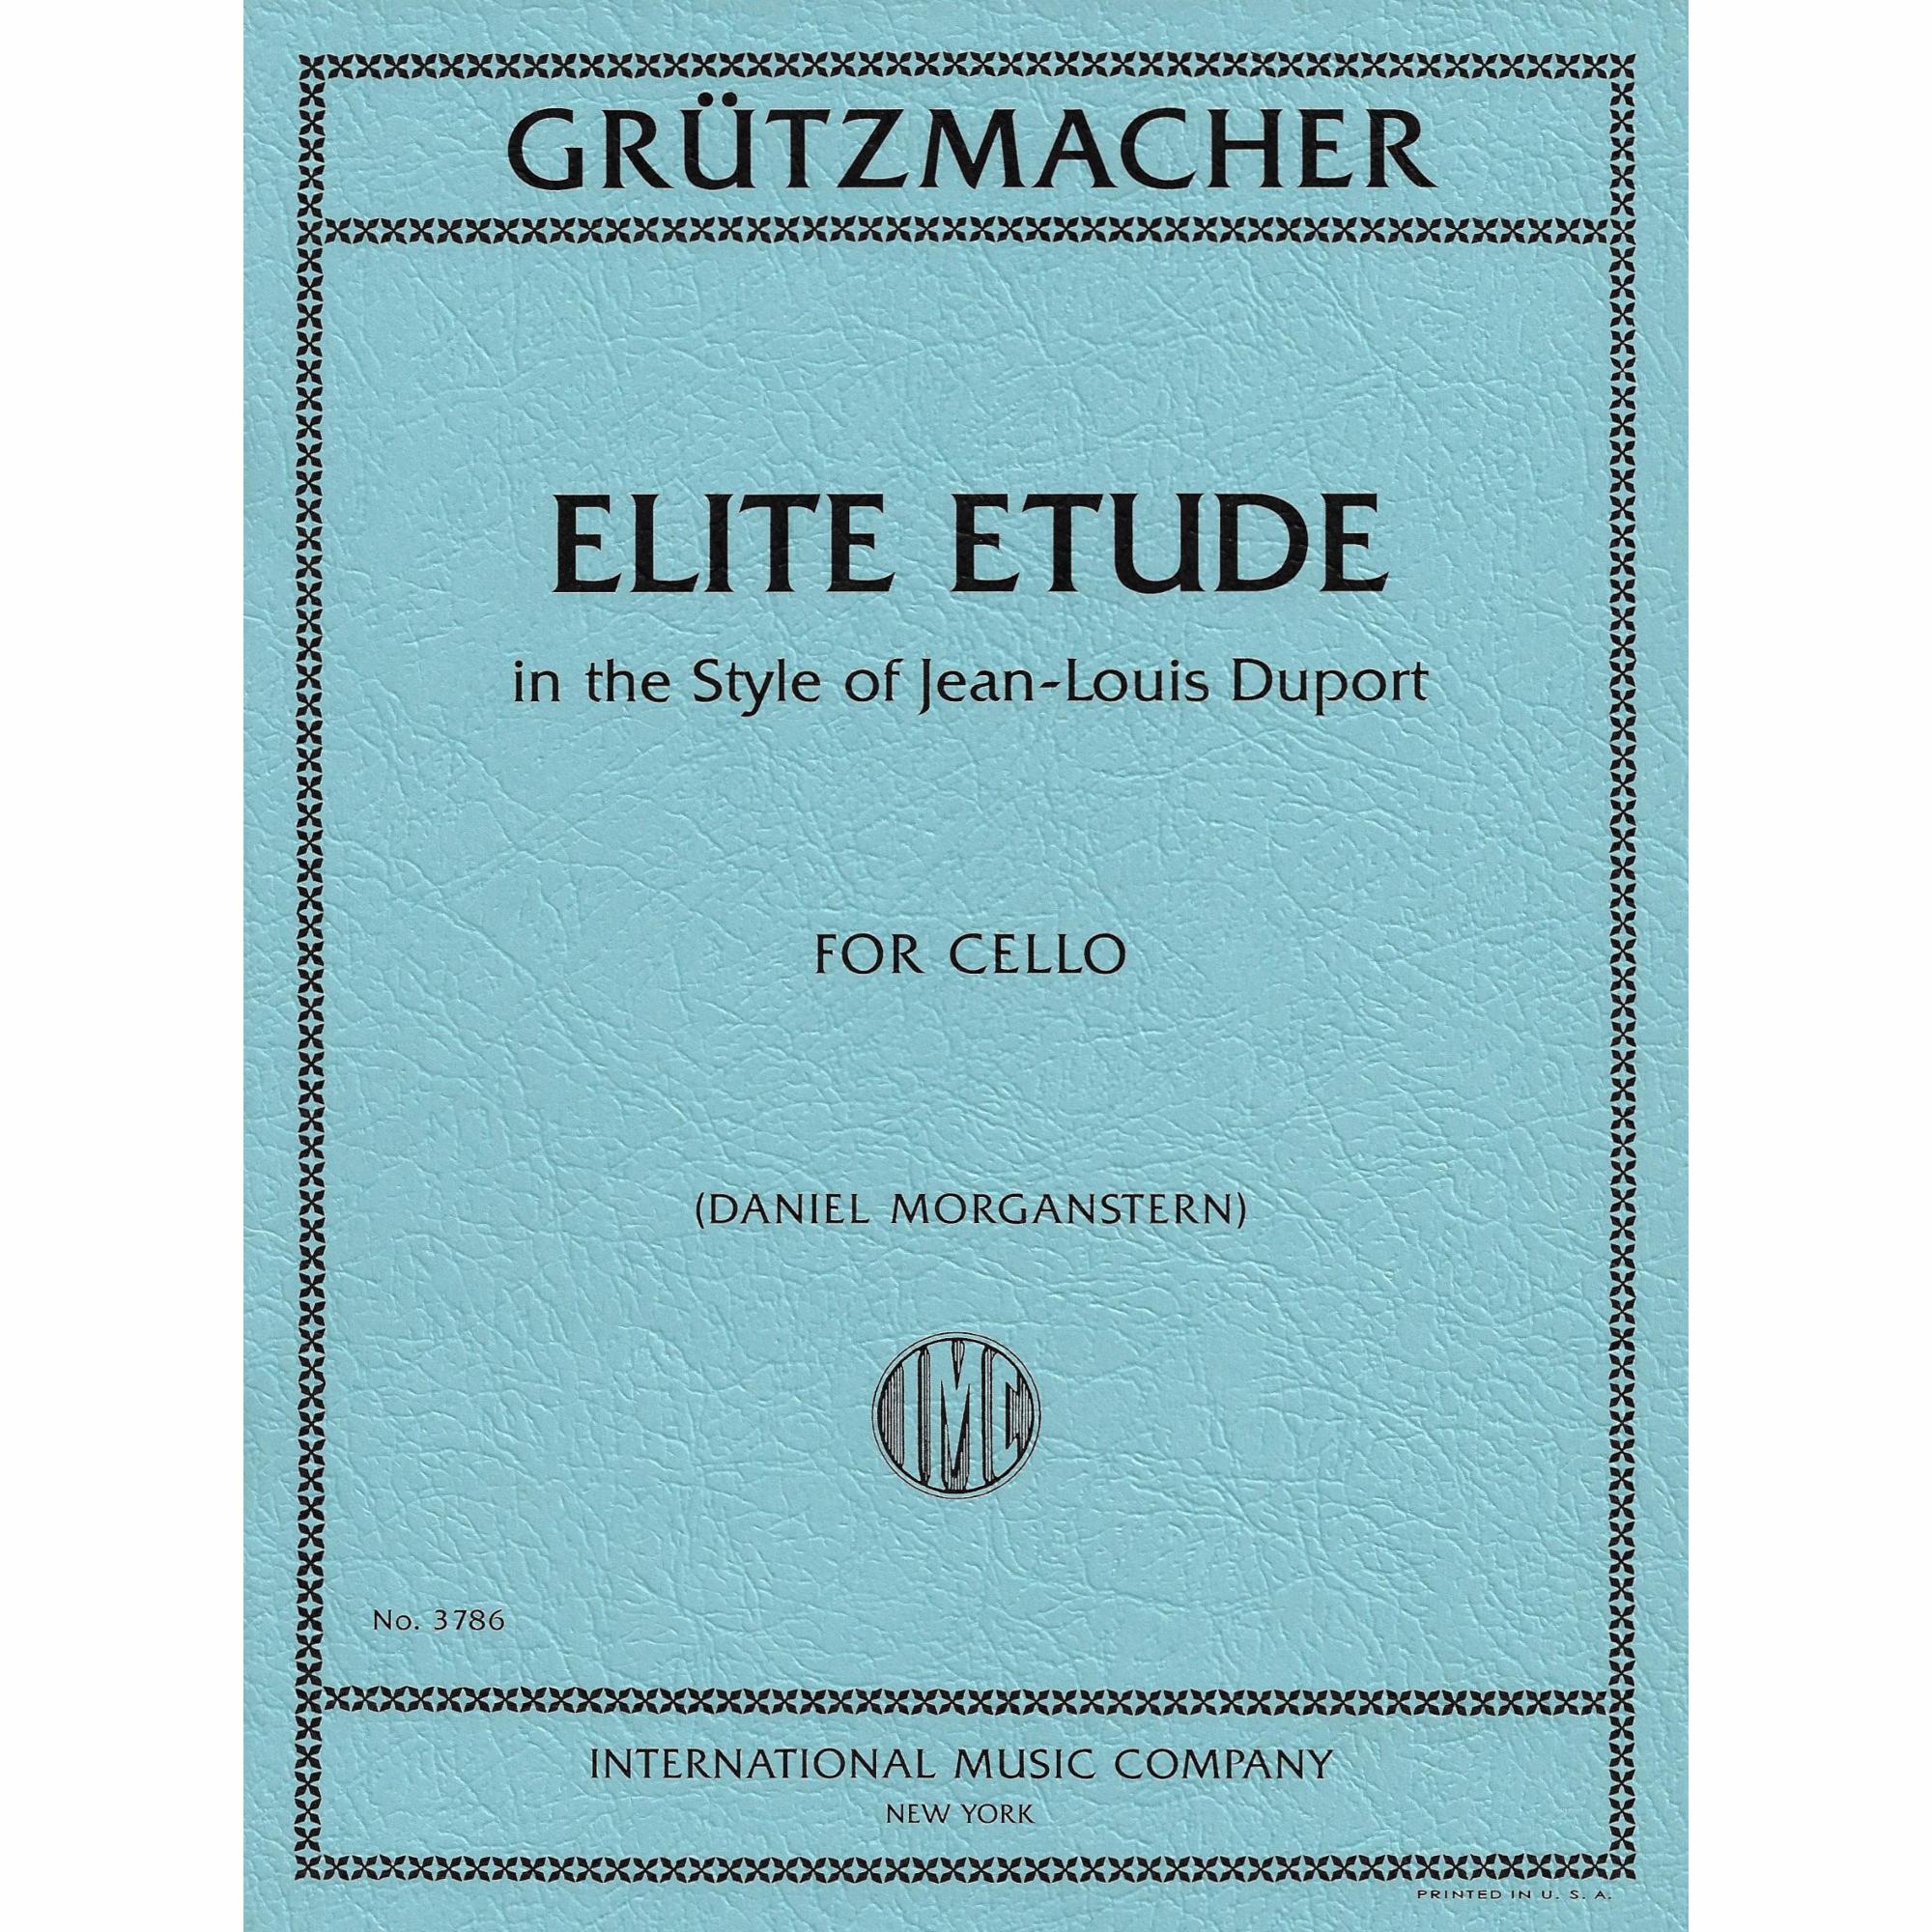 Gruetzmacher -- Elite Etude for Cello